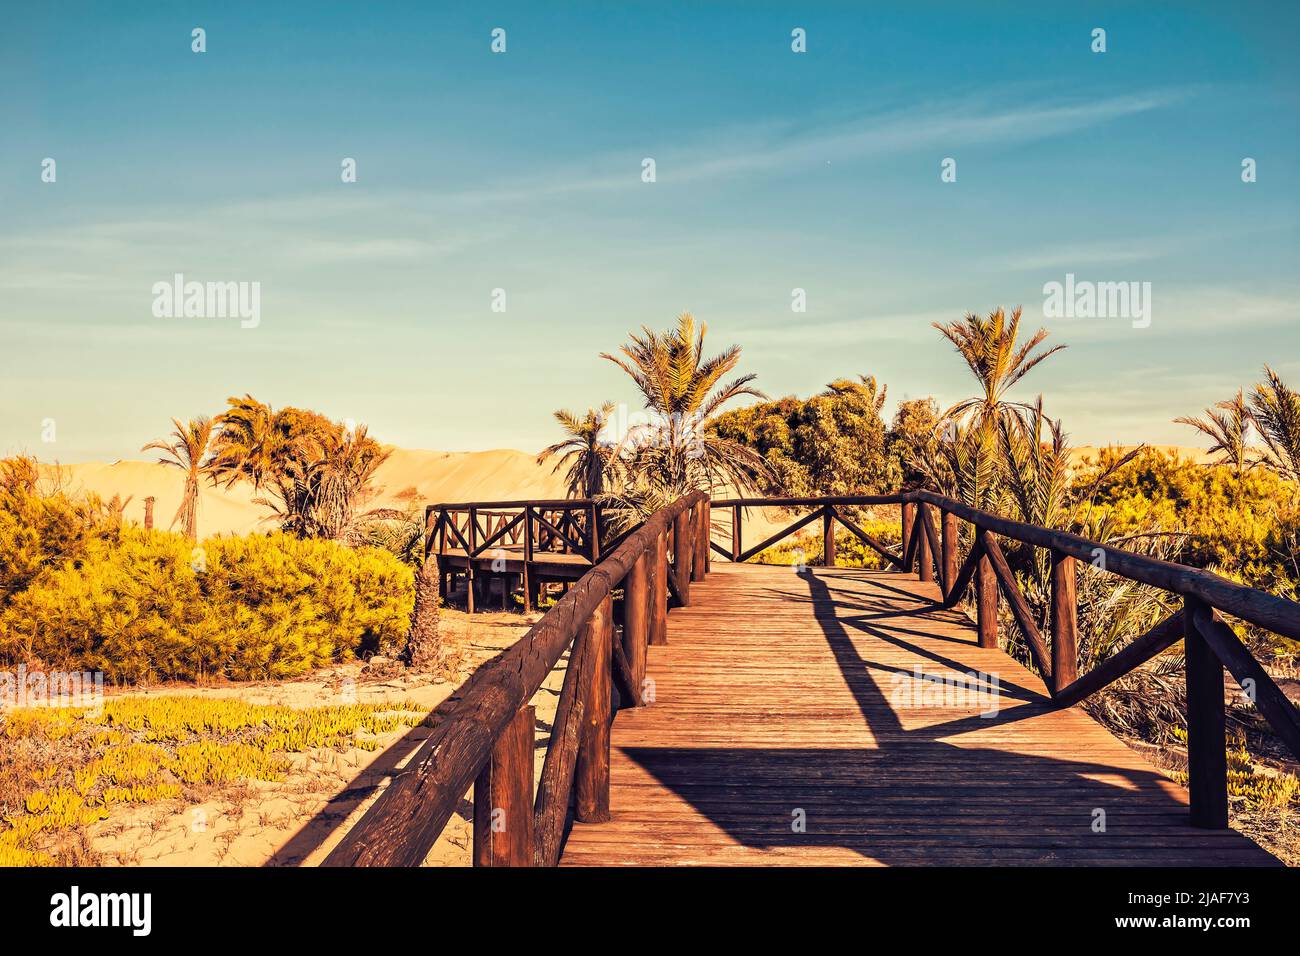 cavalcavia di legno sulle dune di sabbia con vegetazione mediterranea Foto Stock